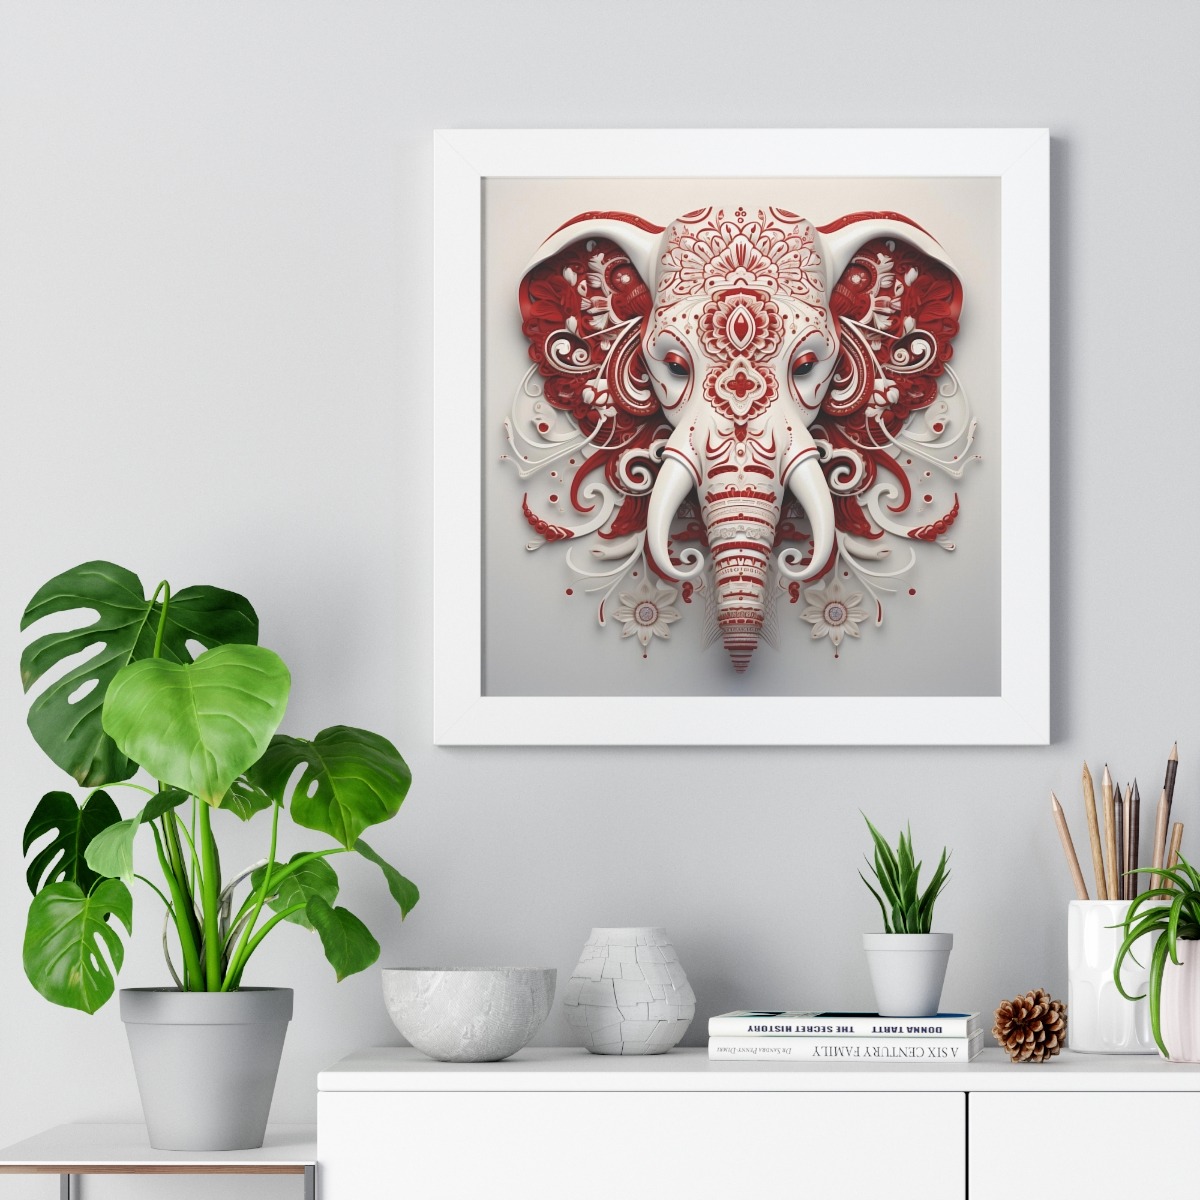 Crimson and White: Paisley Elephant Logo on White Framed Vertical Poster